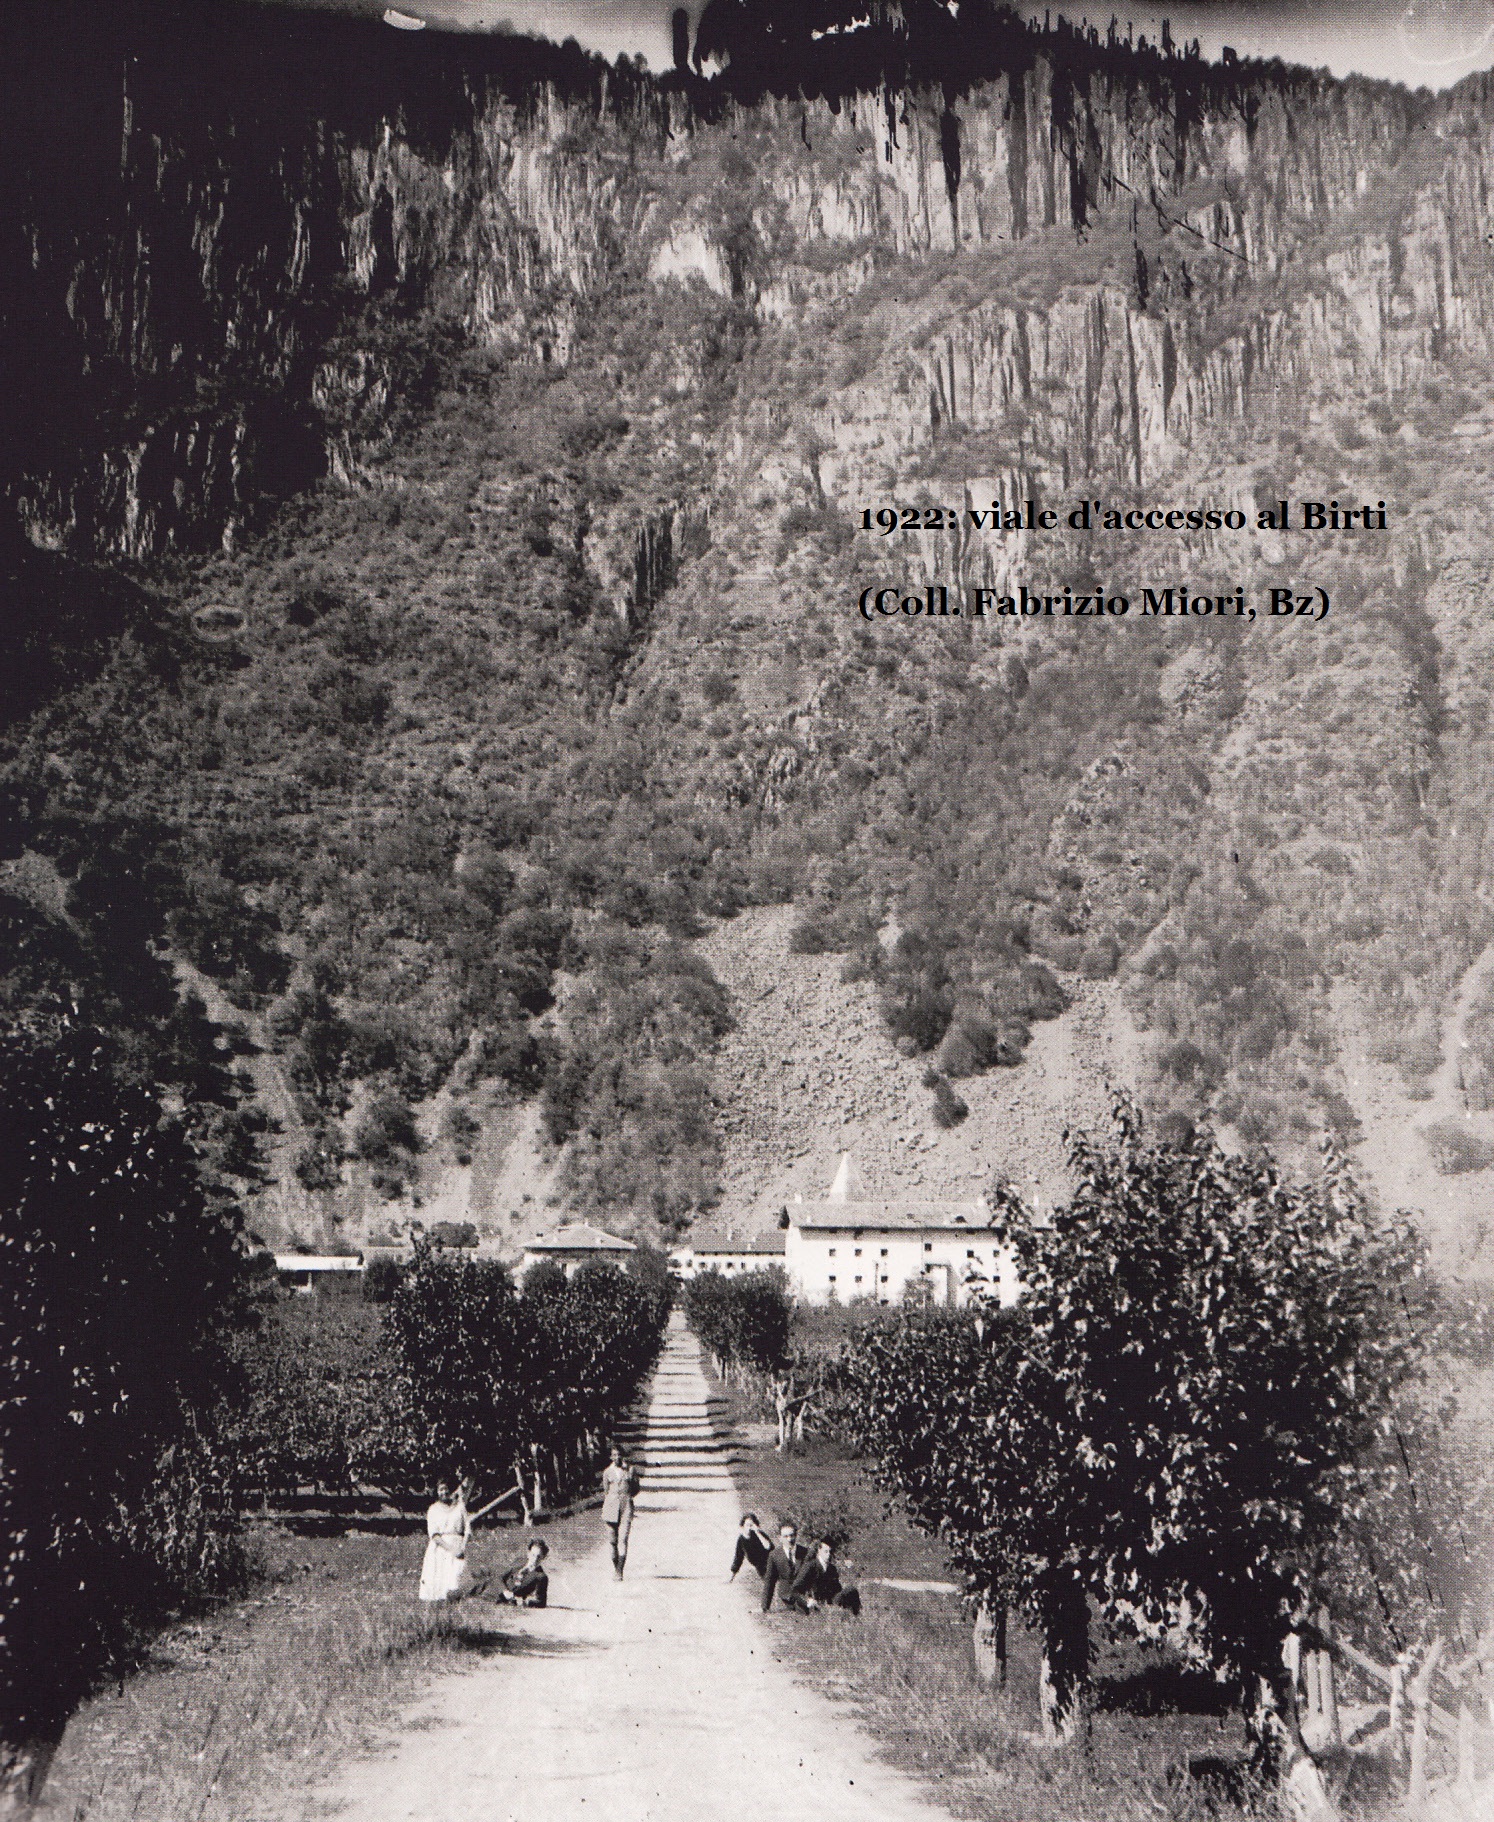 1922: viale d'accesso al Birti. Coll. Fabrizio Miori Bz